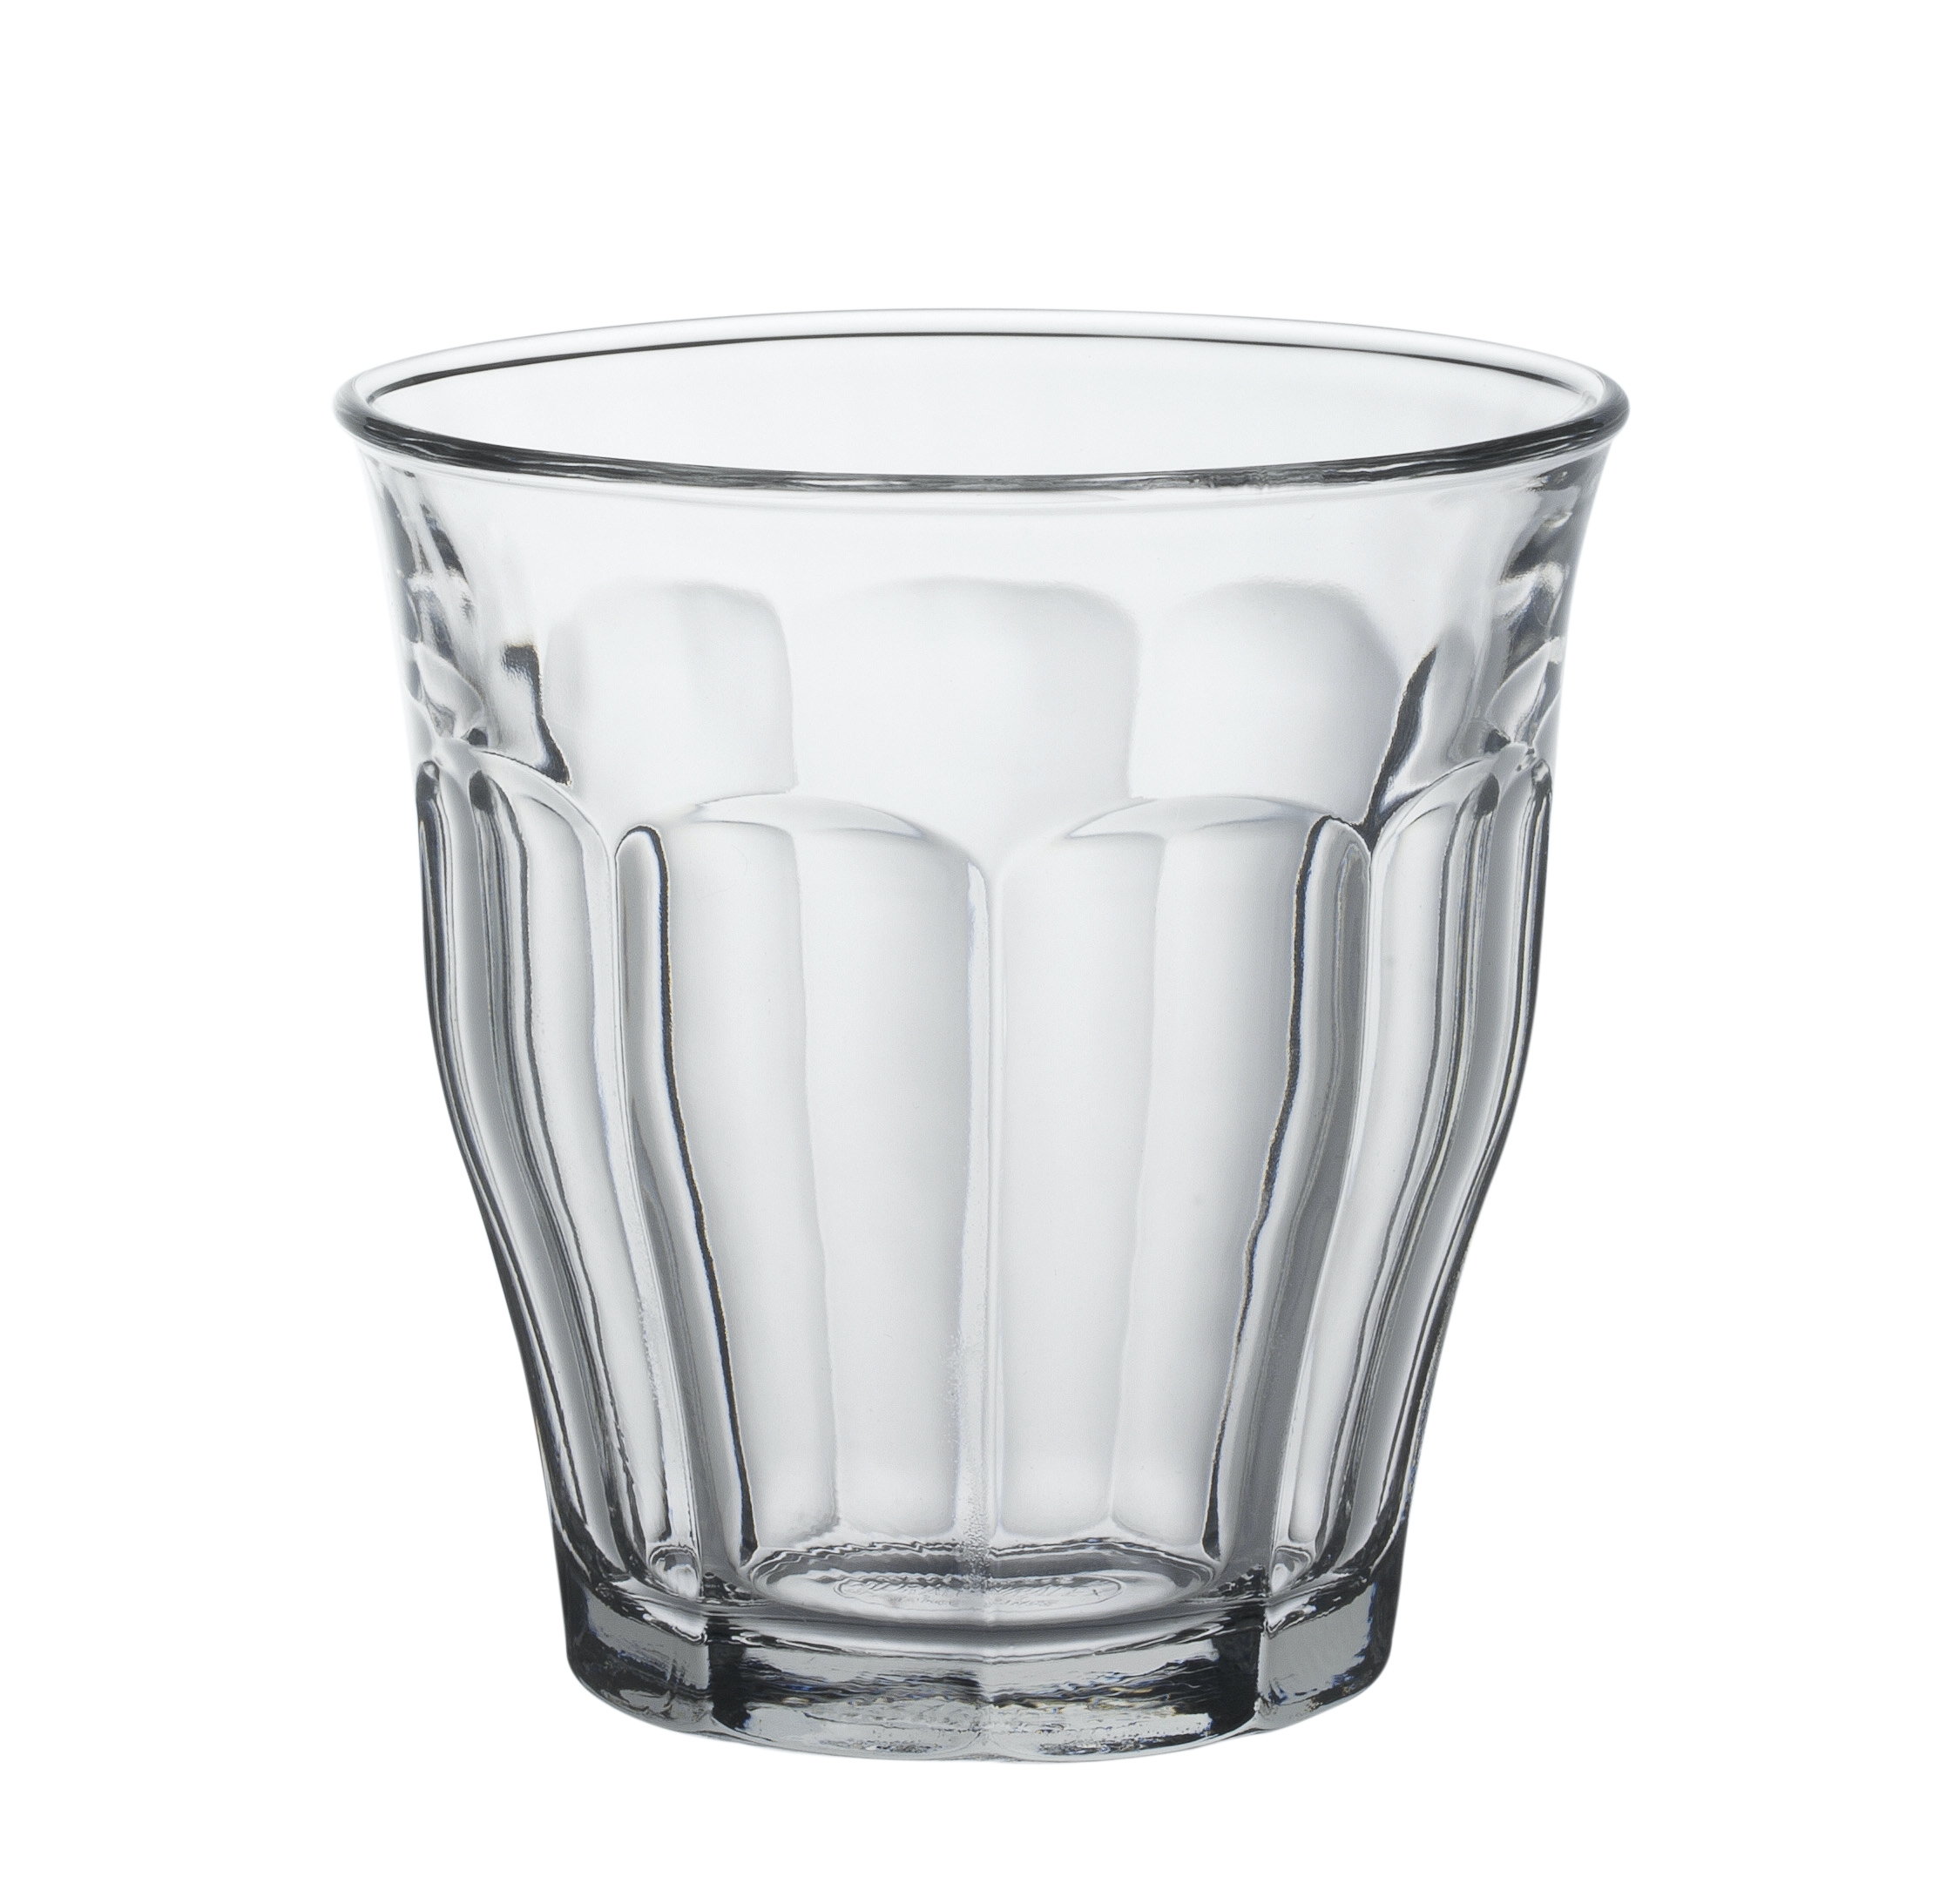 Duralex Picardie Tumbler, Trinkglas, 250ml, mit Füllstrich bei 0.2l, Glas gehärtet, transparent, 6 Stück